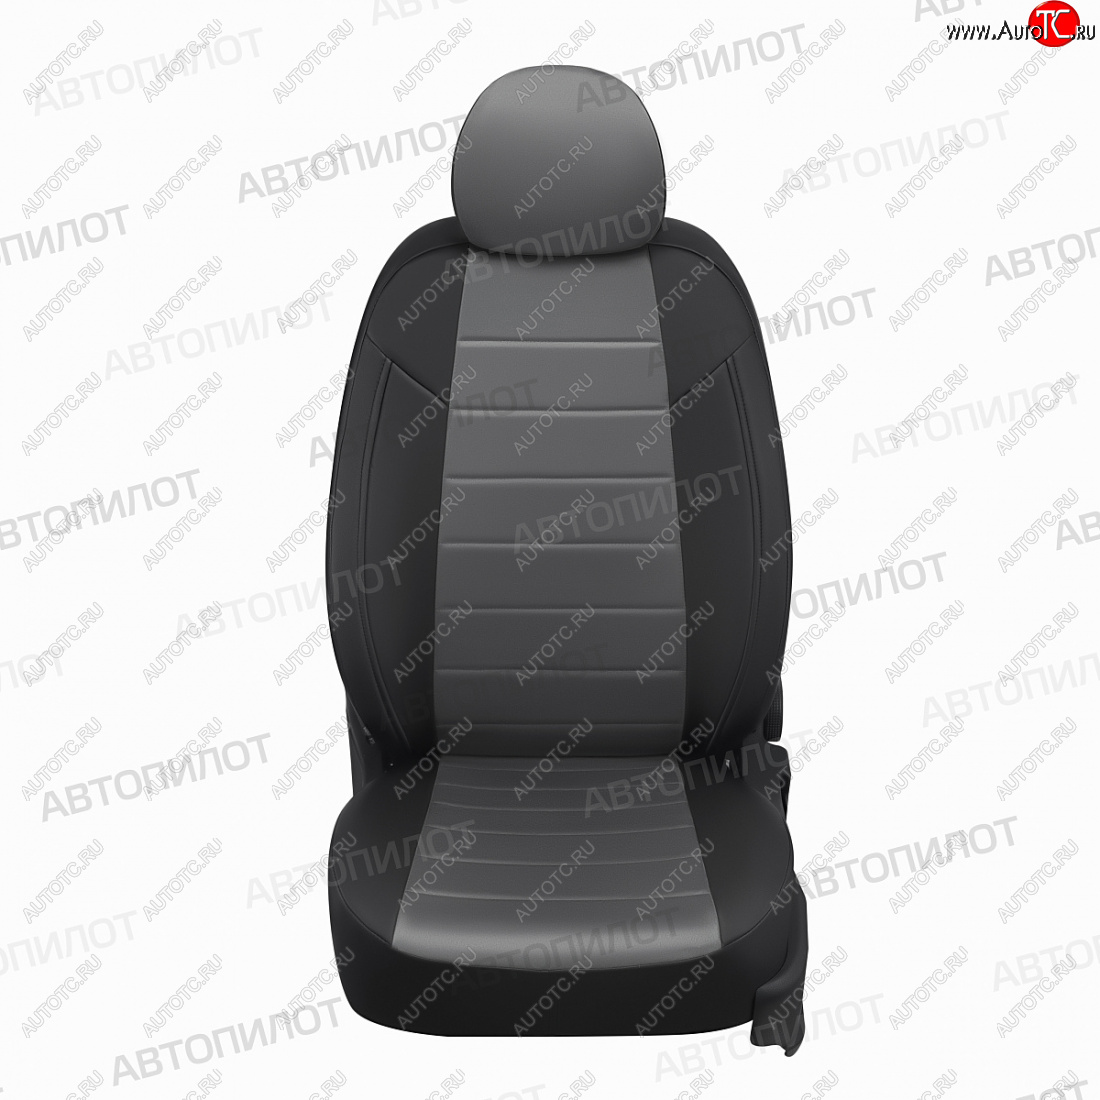 13 449 р. Чехлы сидений (экокожа/алькантара) Автопилот  KIA Carens  FC, RS (1999-2006) (черный/серый)